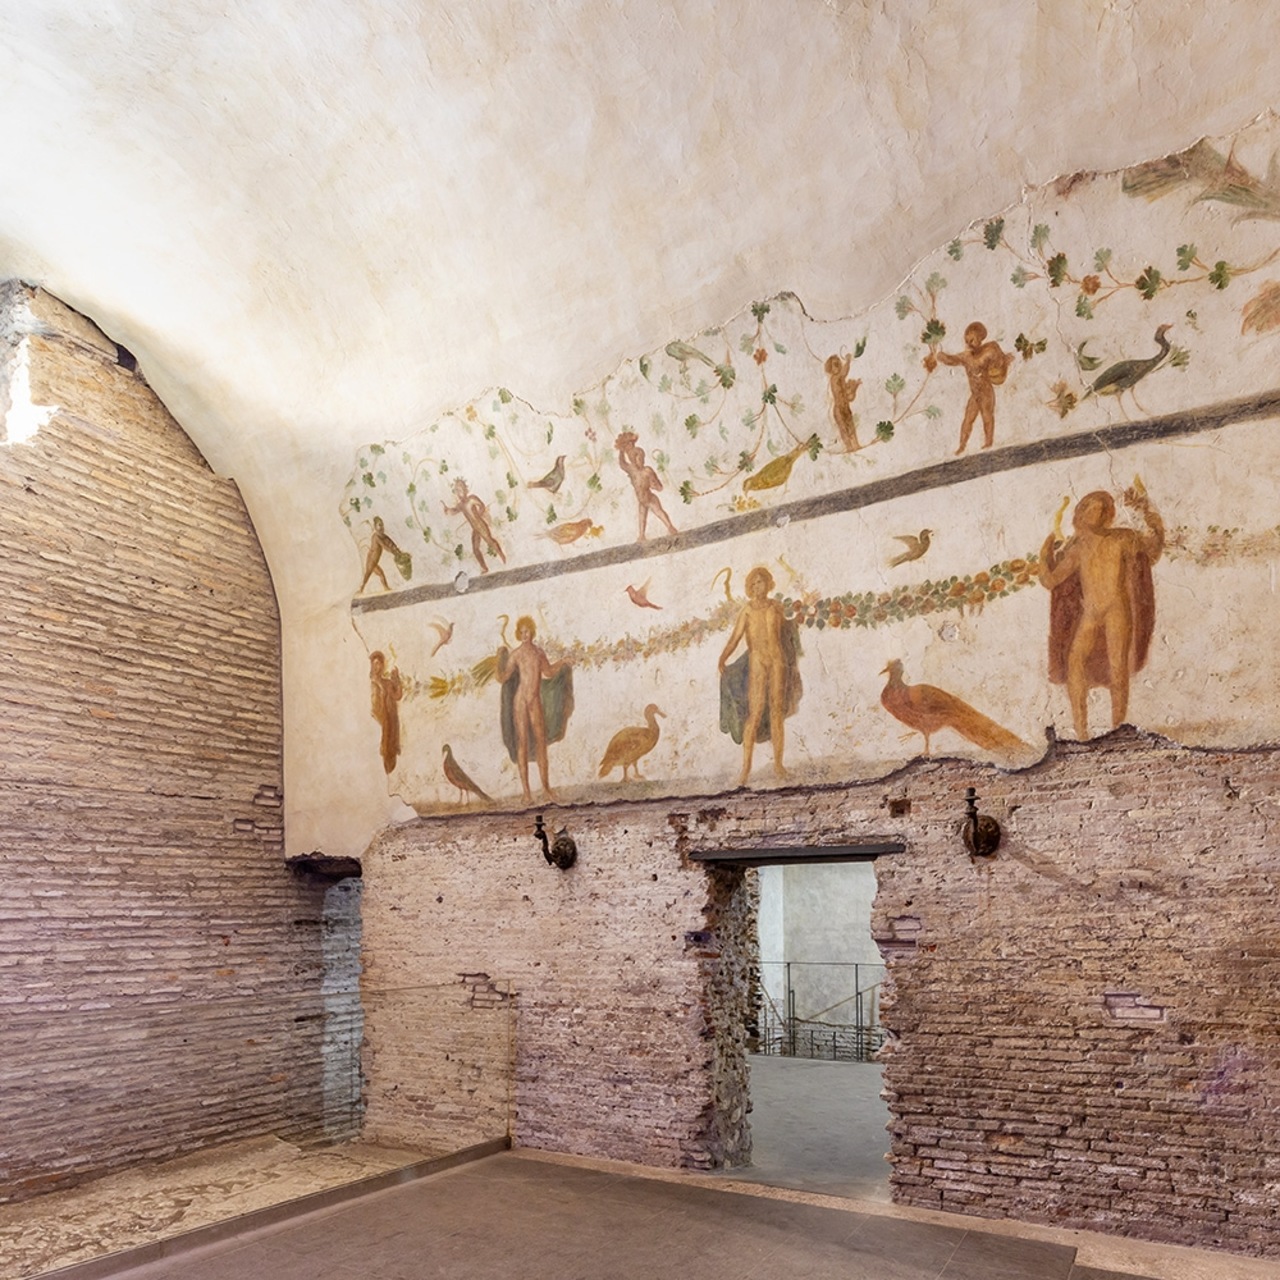 ArcheoVerso: el projecte cultural utilitzarà el Case Romane del Celio, un antic conjunt residencial romà, encara poc conegut encara que darrere del Coliseu, per a la fase experimental de dos anys.